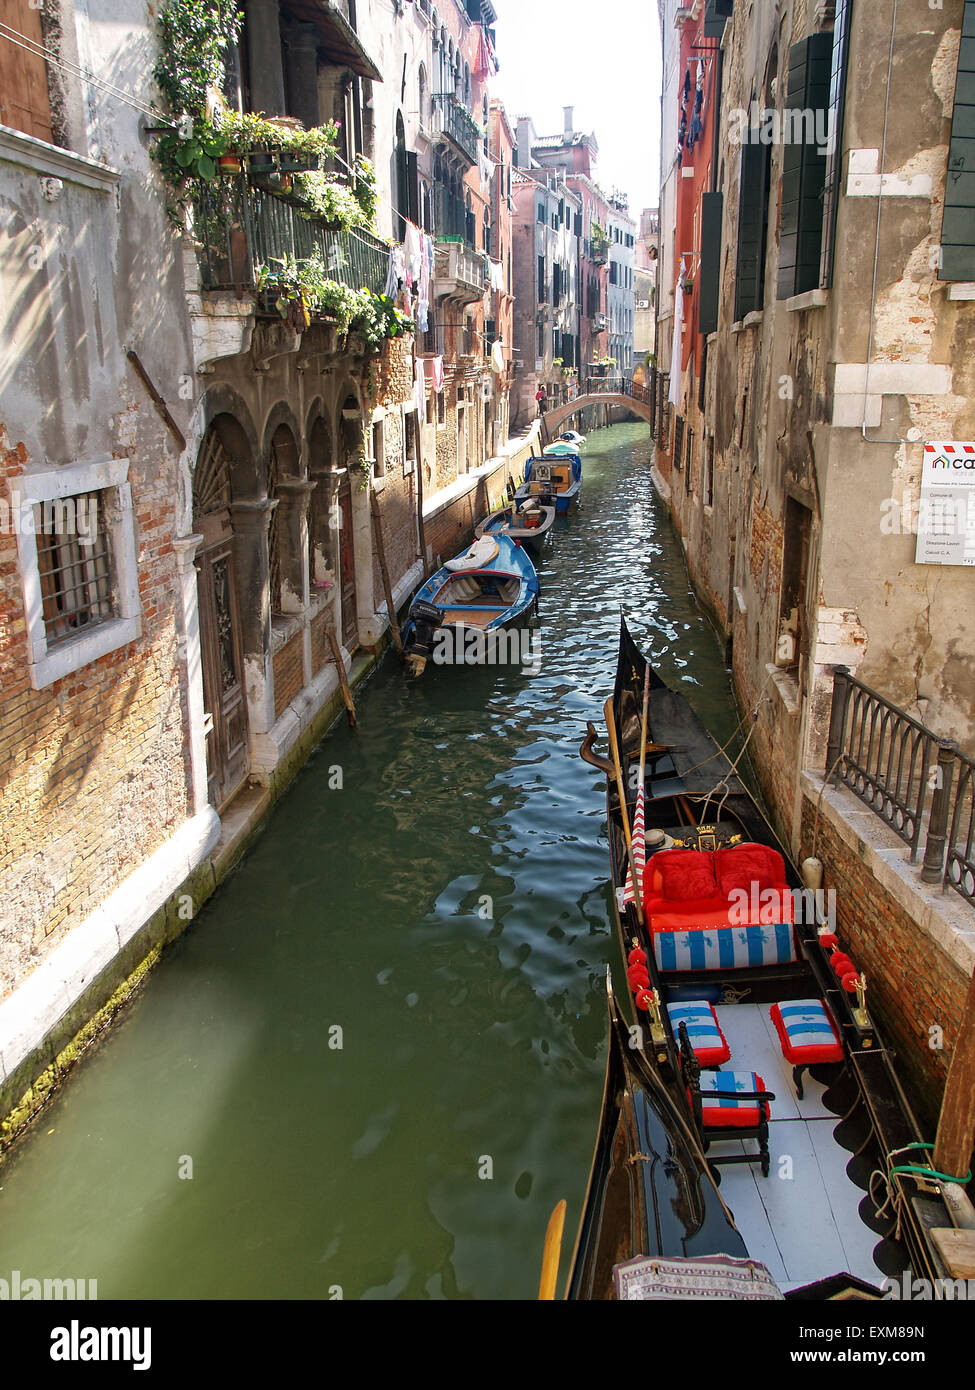 Vista di una gondola ormeggiata in uno stretto canale nella città di Venezia con belle case sui lati. Venezia. L'Italia. Foto Stock